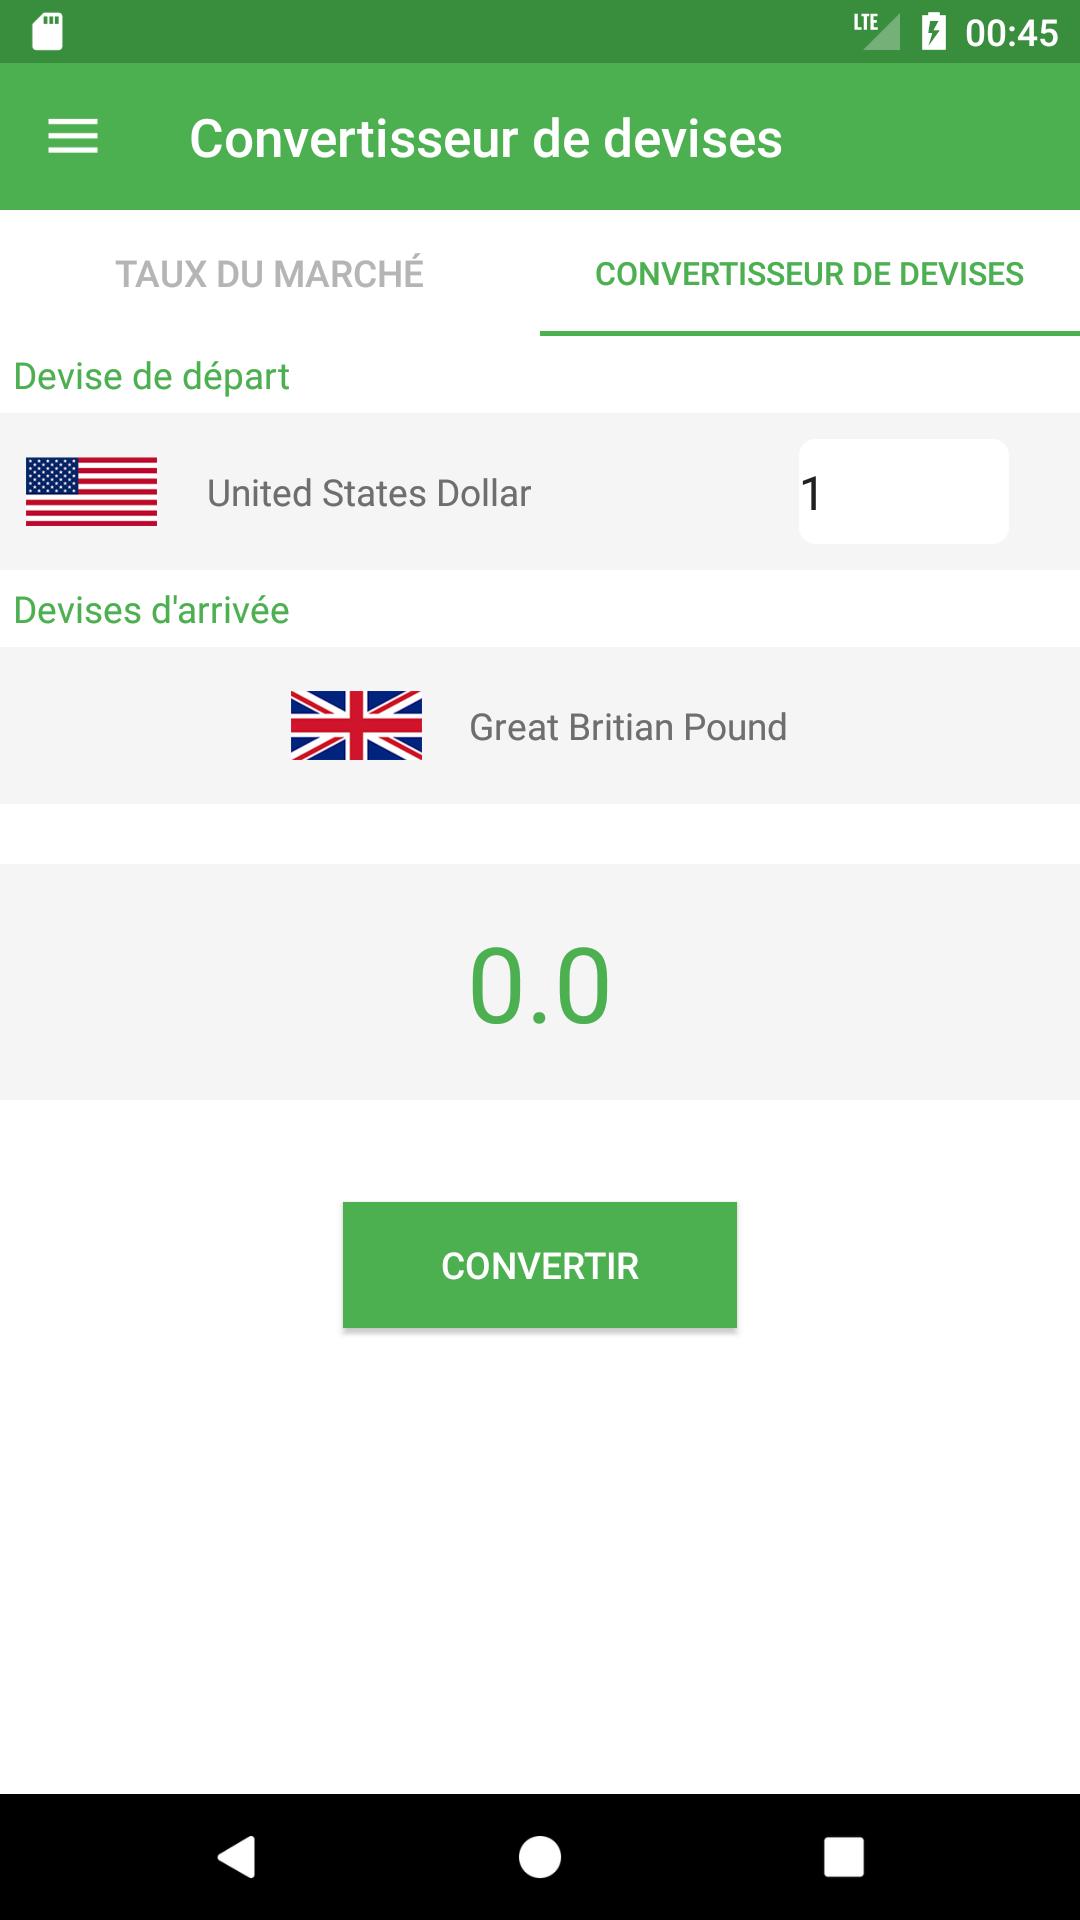 Convertisseur de devises for Android - APK Download